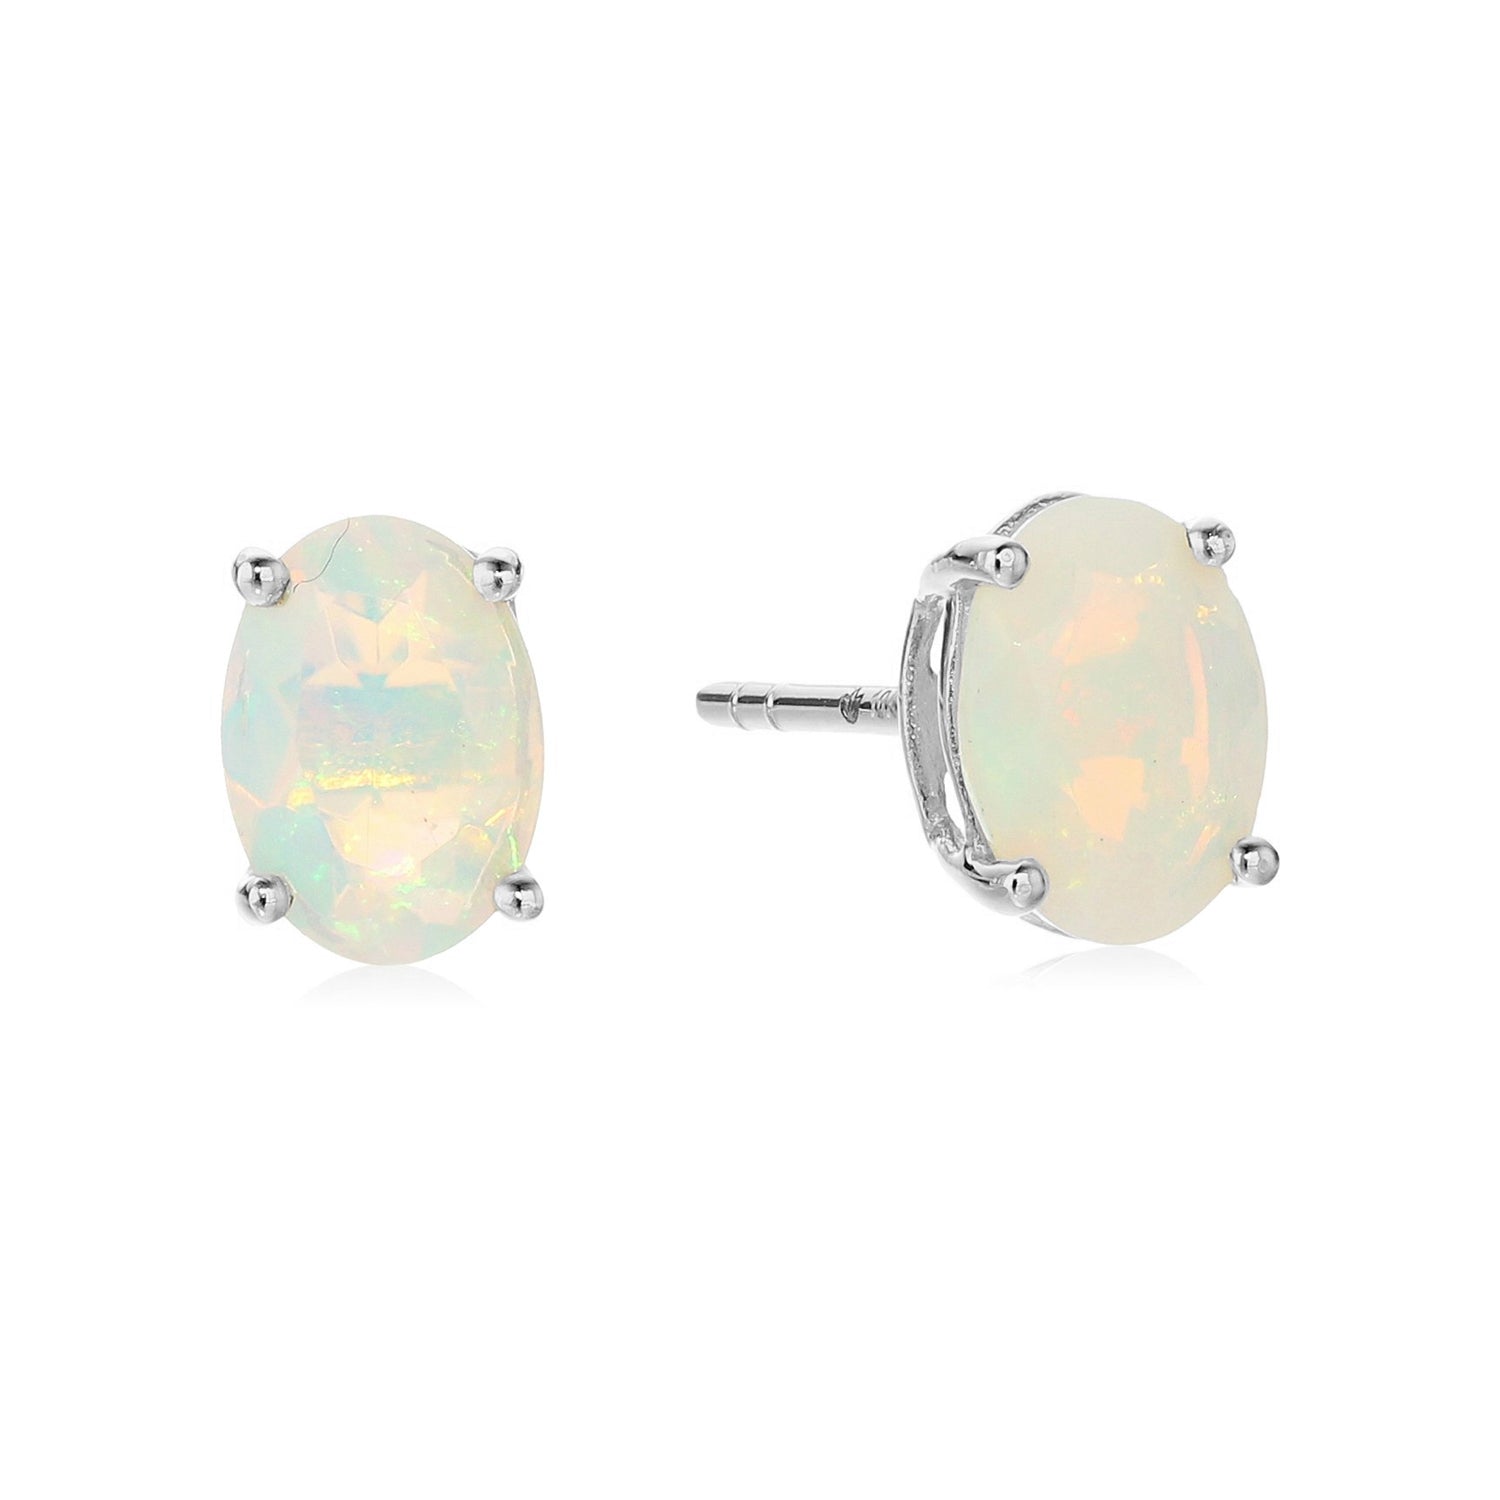 Sterling Silver 8x6 Oval Genuine Gemstone Birthstone Stud Earrings